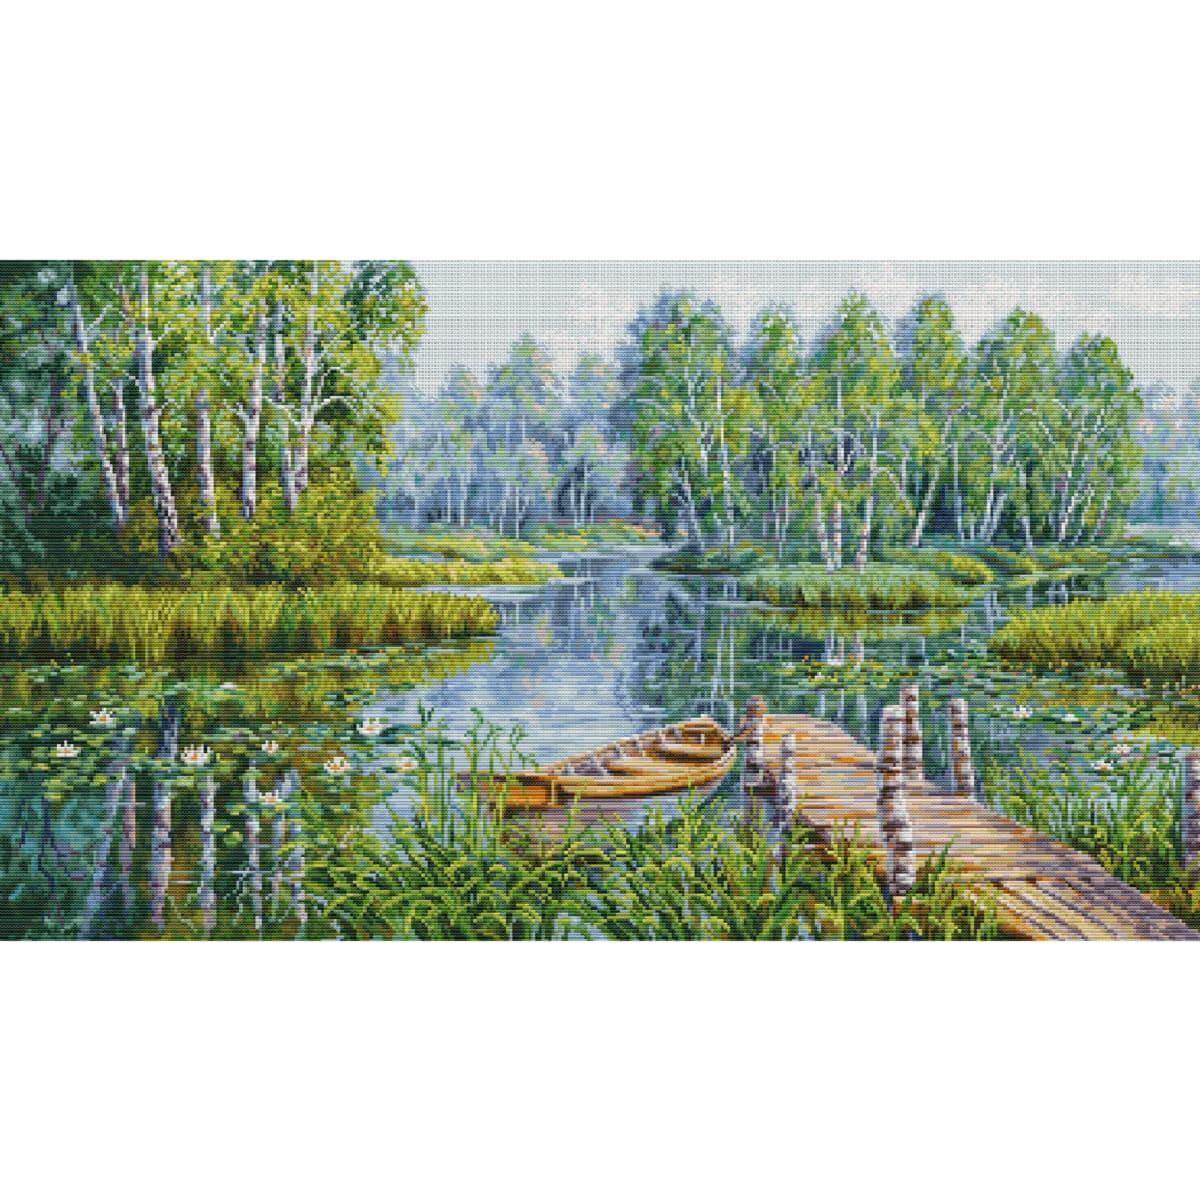 Un tranquilo paisaje muestra un embarcadero de madera que...